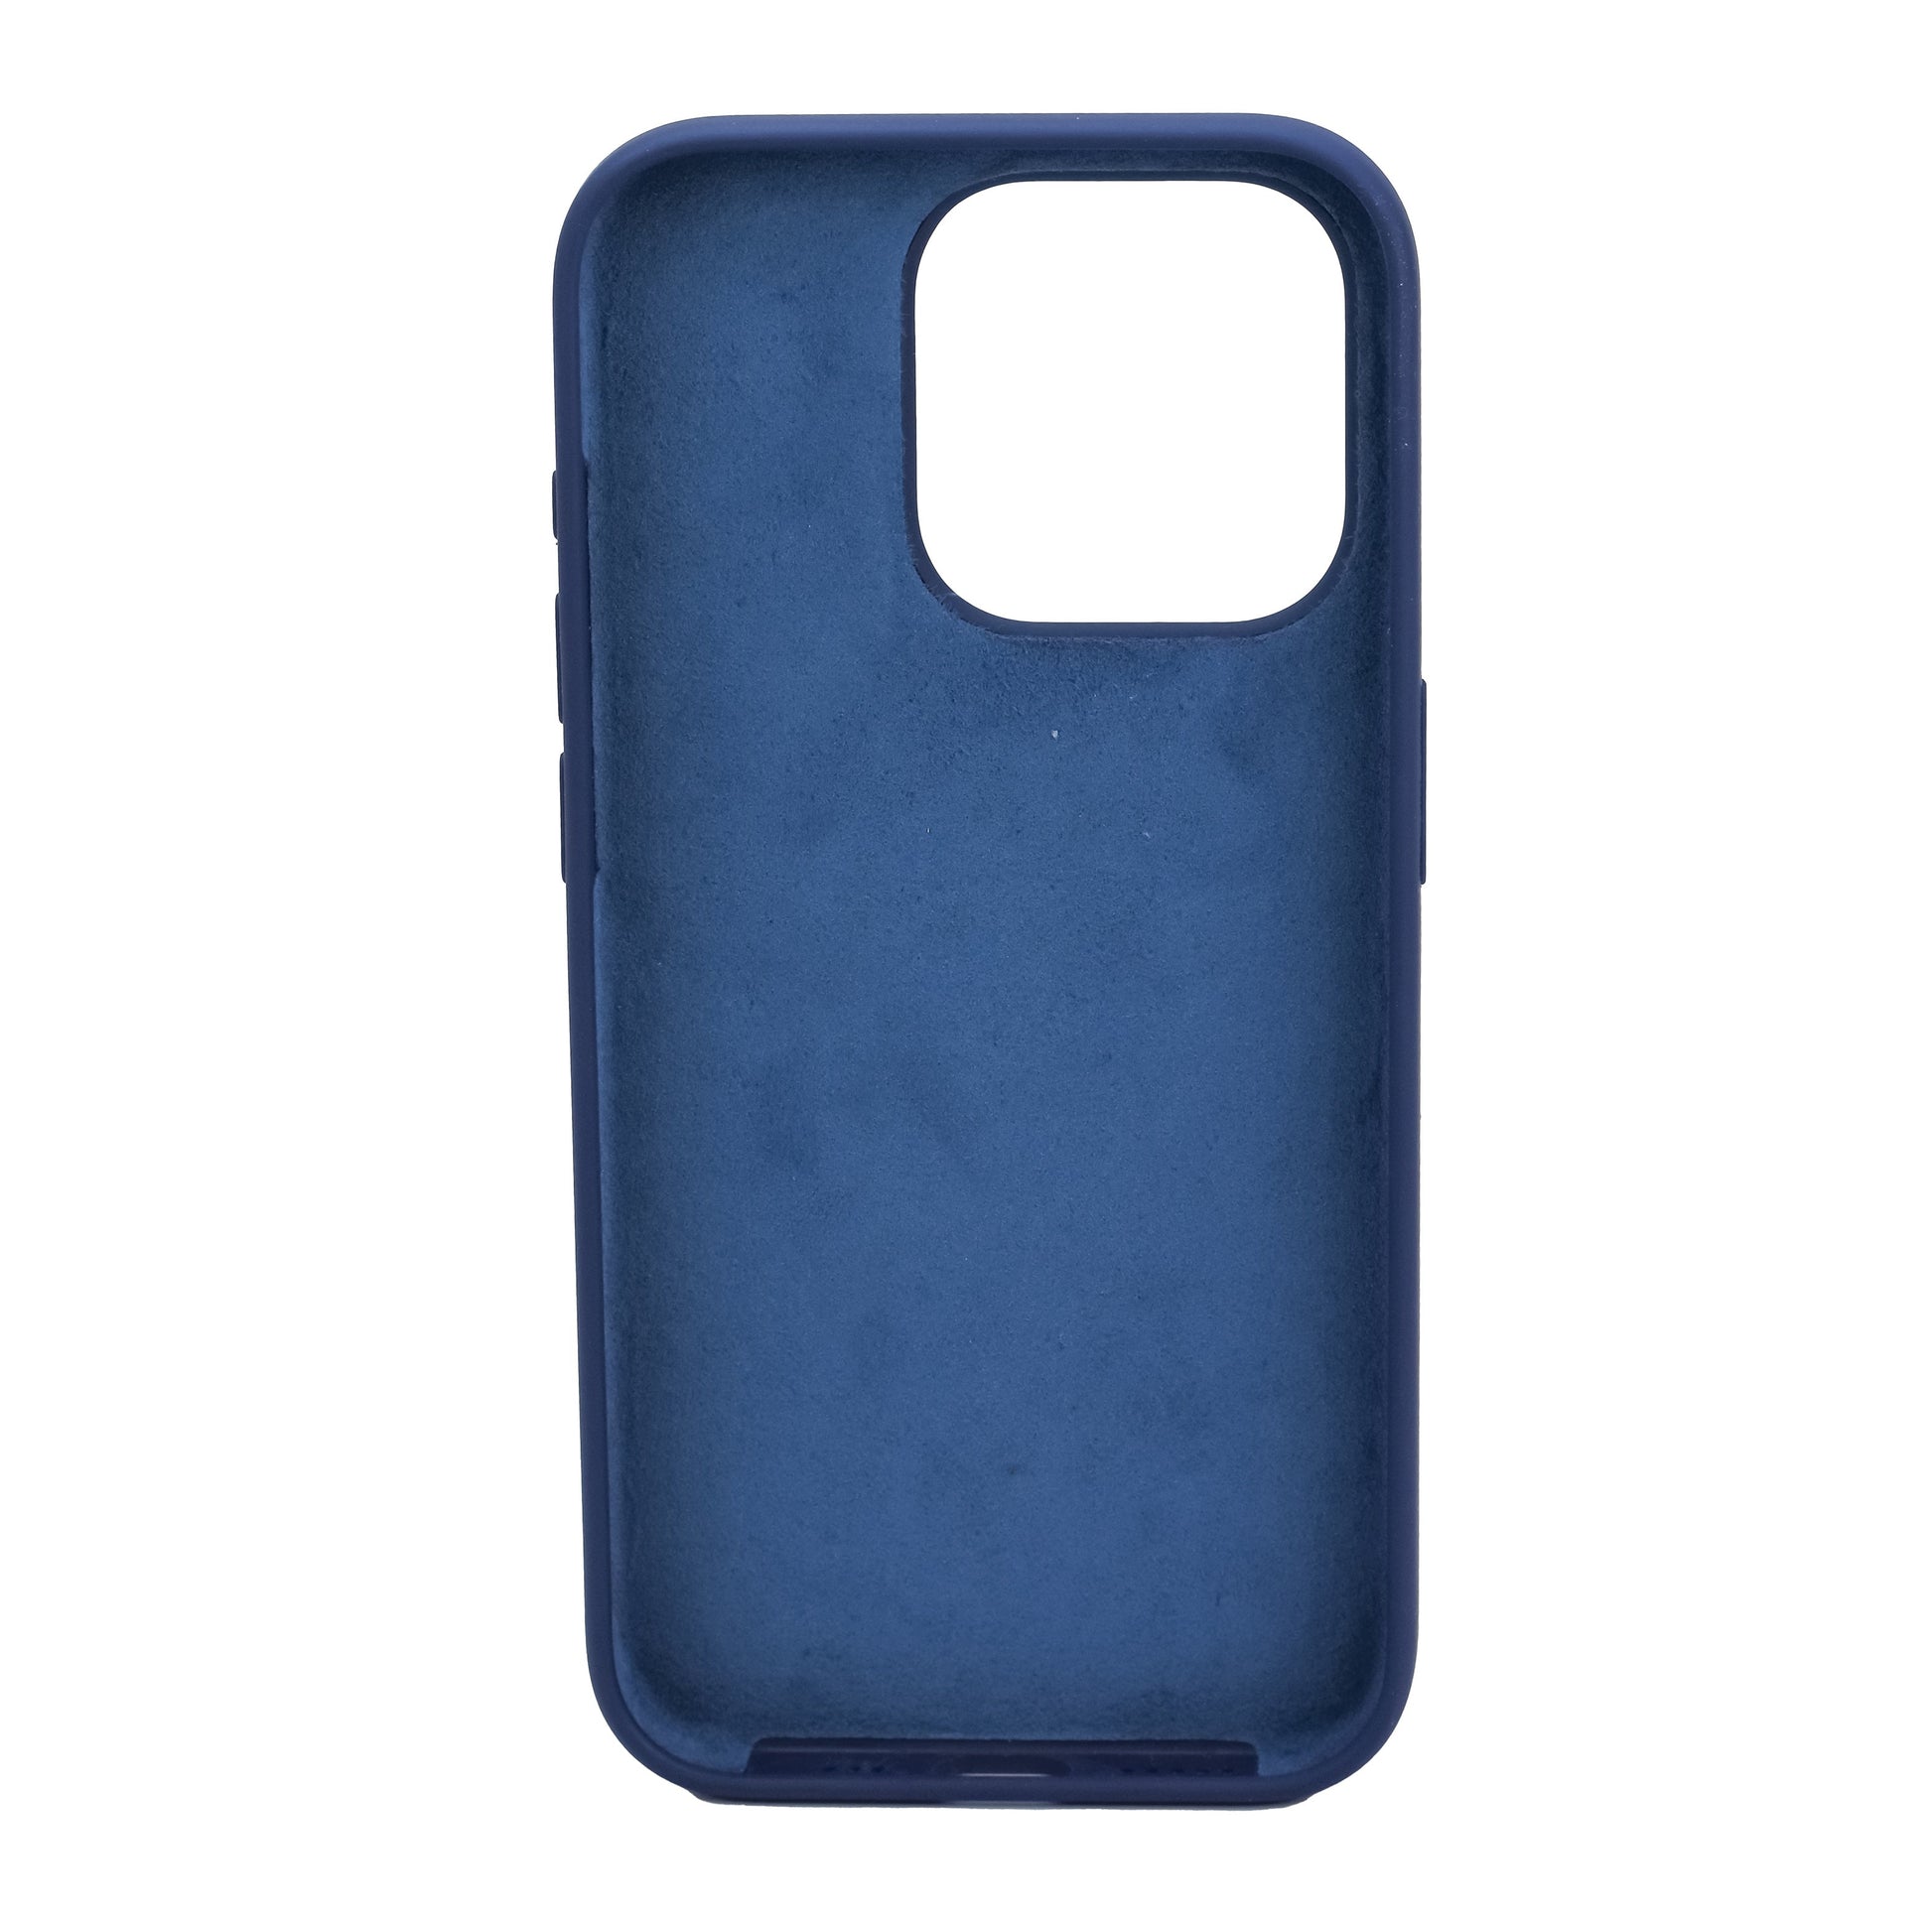 OEM Original Apple iPhone 13 Pro Max (6.7) Silicone Leather Case